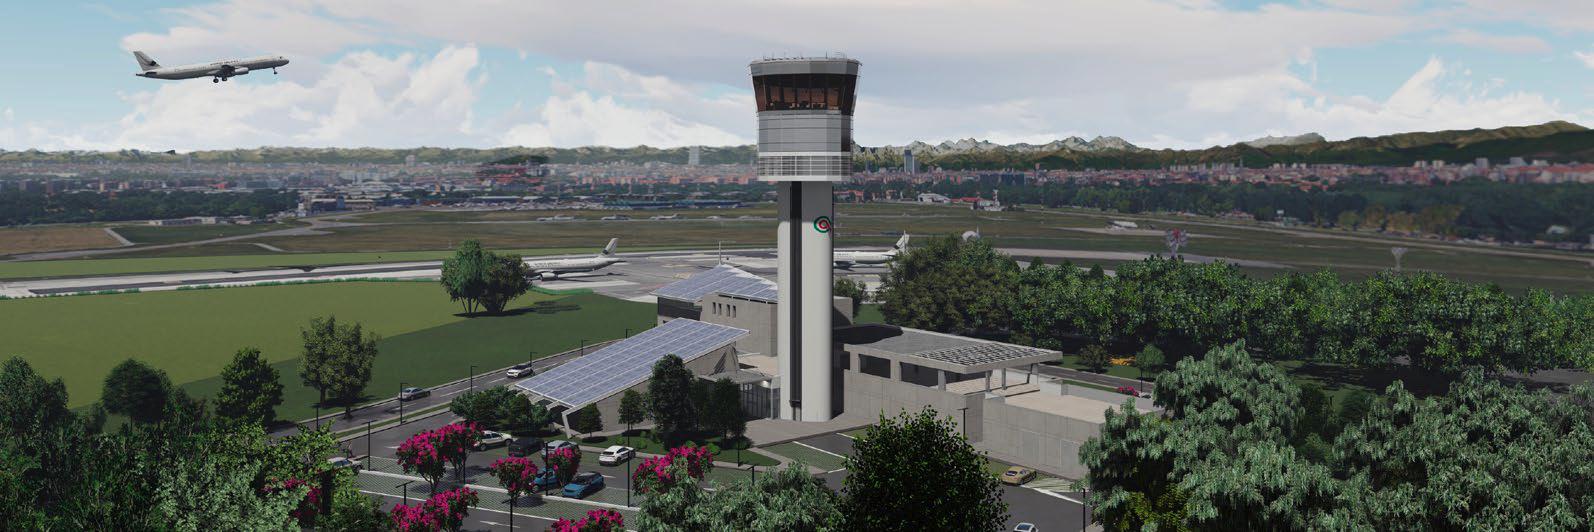 Tecnicaer - Torre di Controllo Aeroporto di Linate